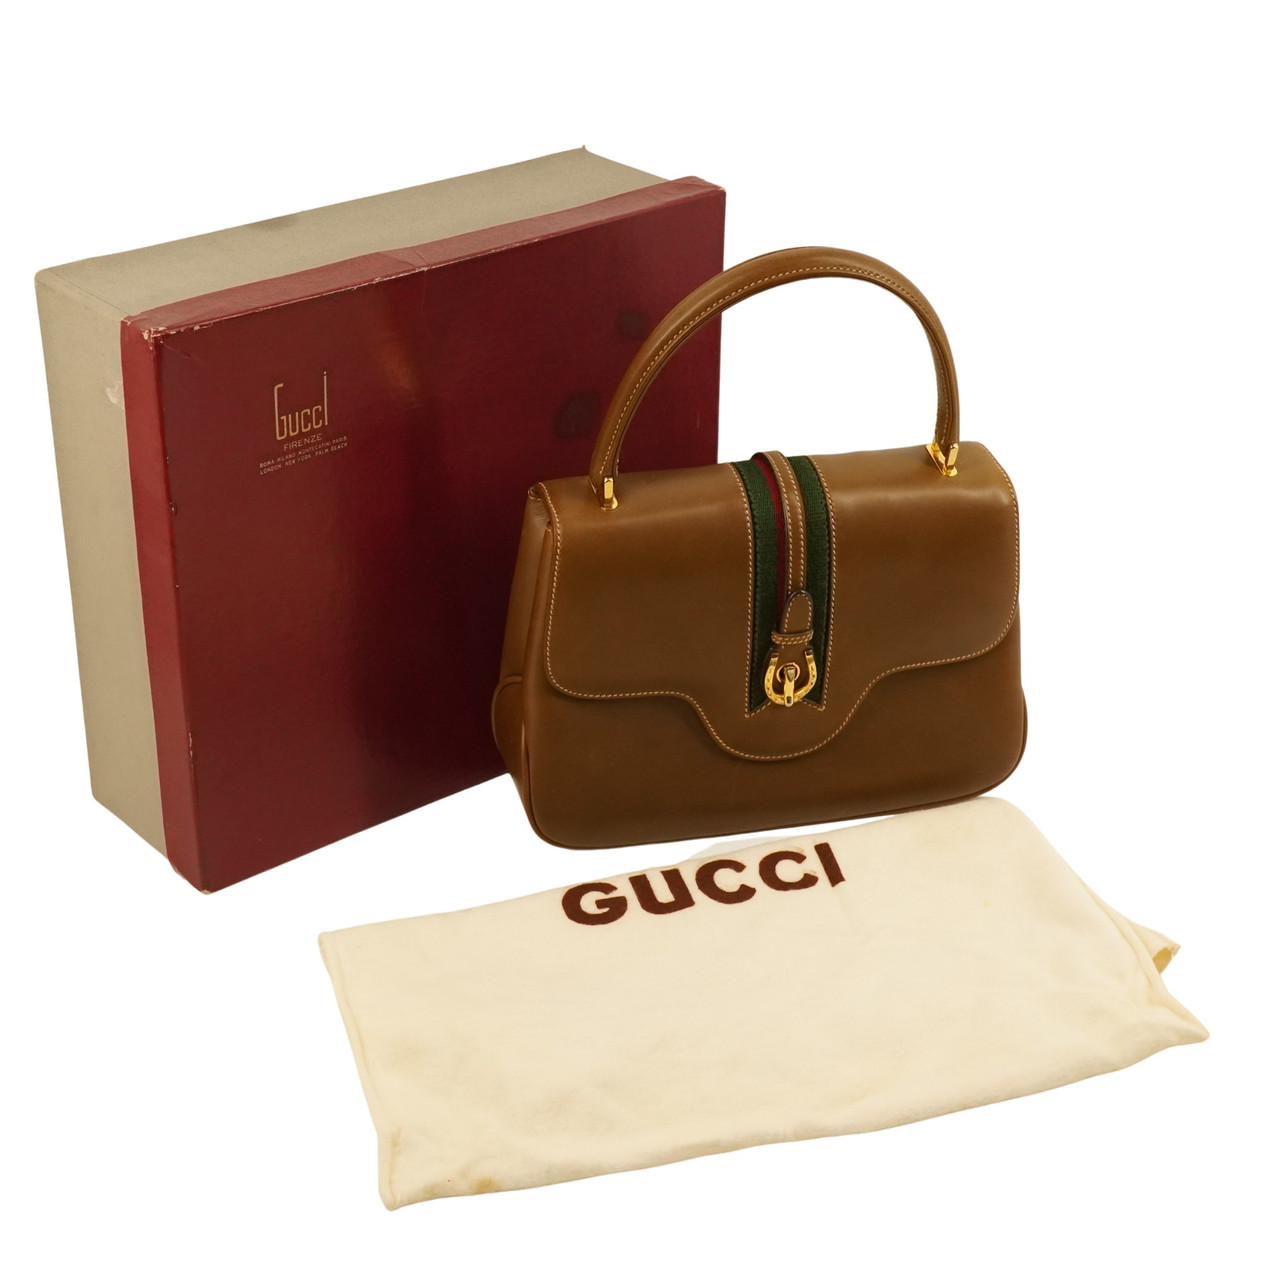 Gucci Bag Black on SALE | Fashionesta